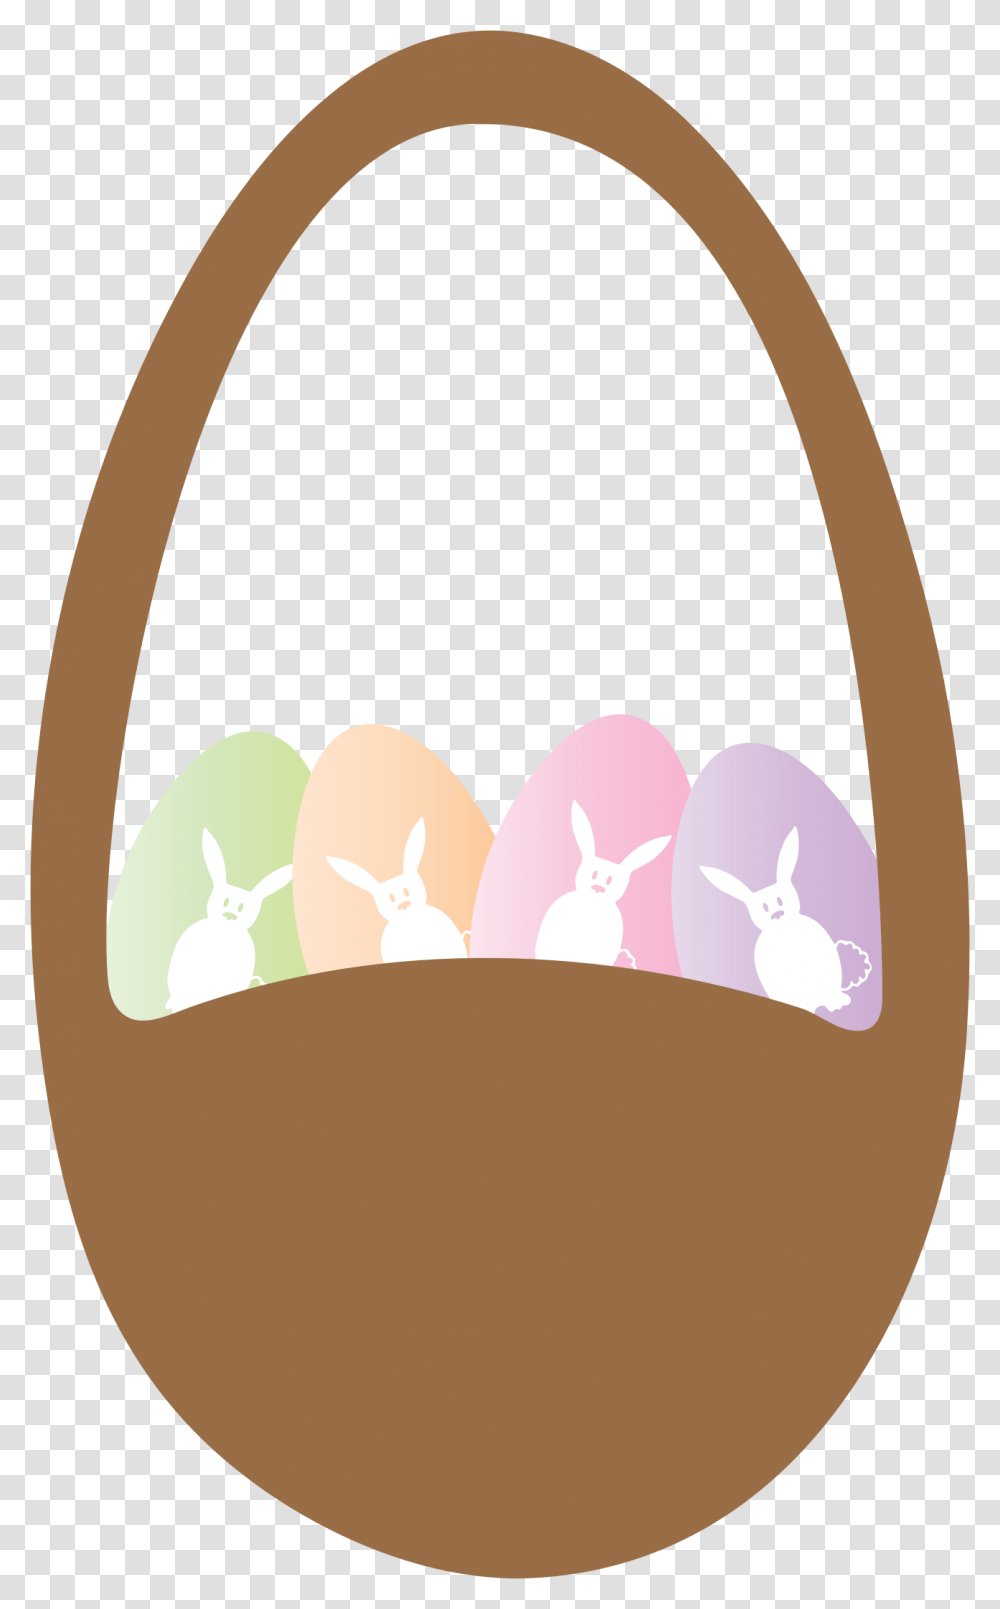 Easter Basket And Eggs Clip Arts Illustration, Food, Rug, Easter Egg Transparent Png